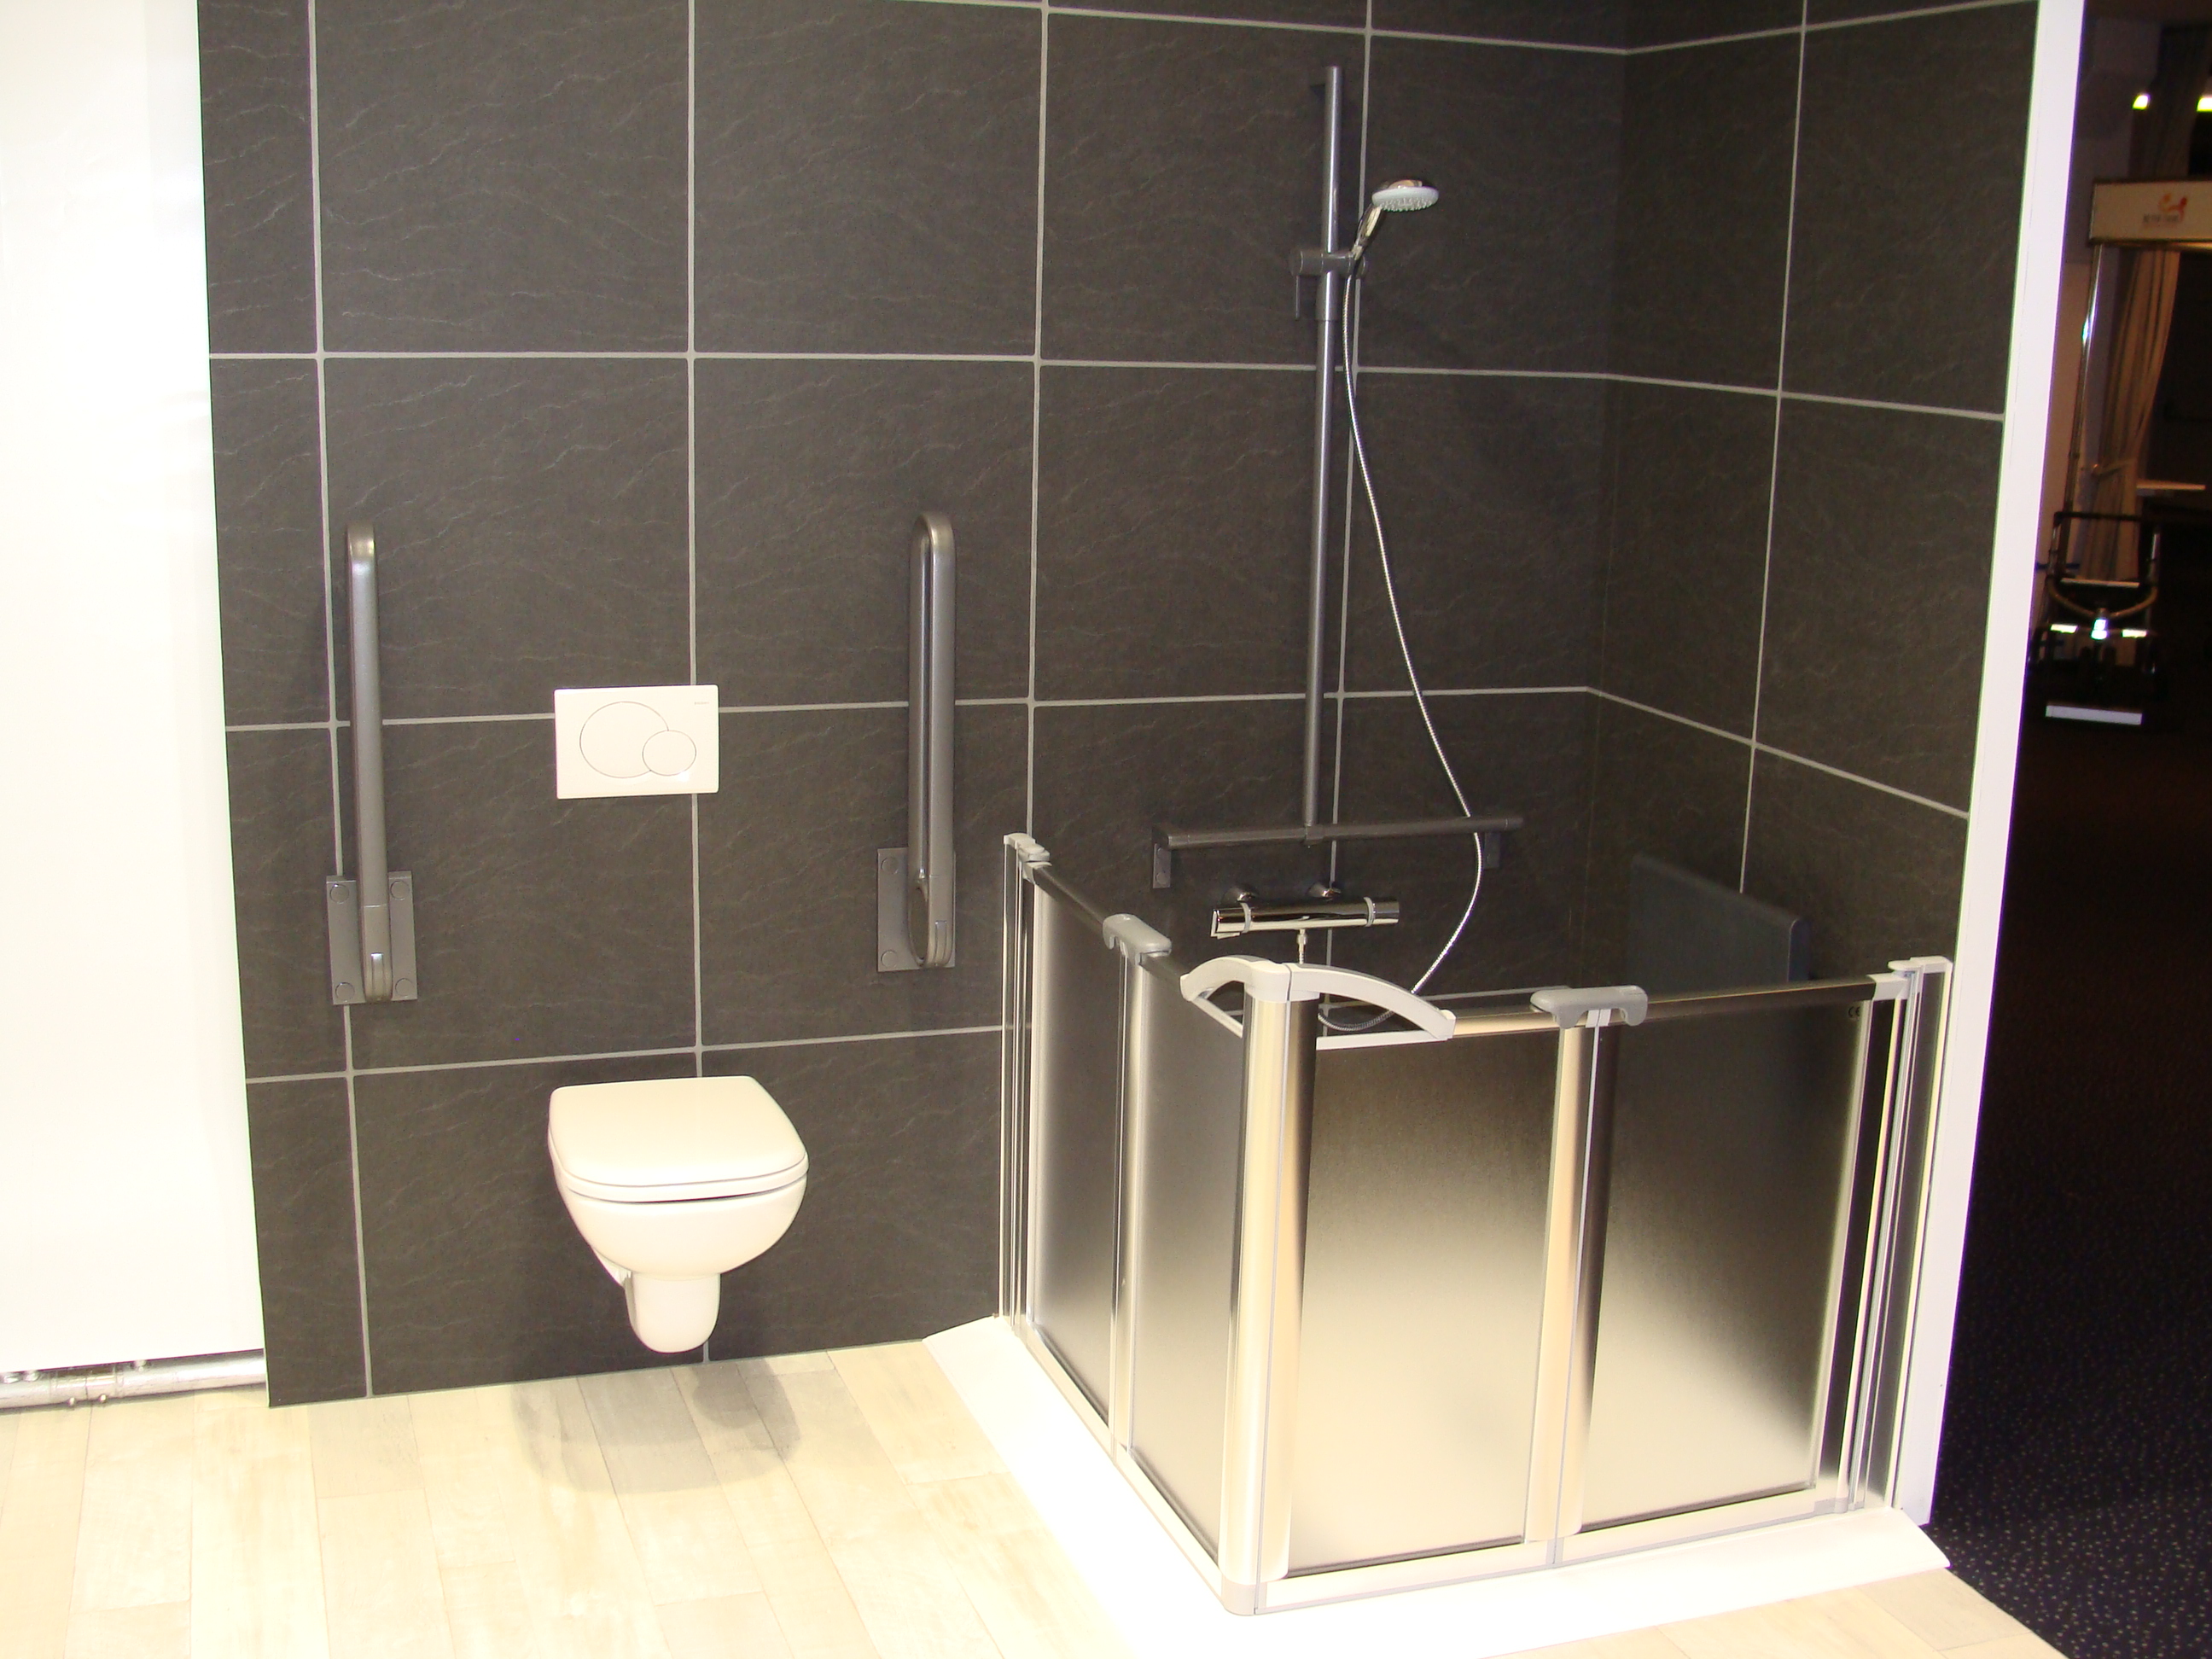 Een aangepaste douche en toilet met handgrepen voor mensen met een fysieke beperking.